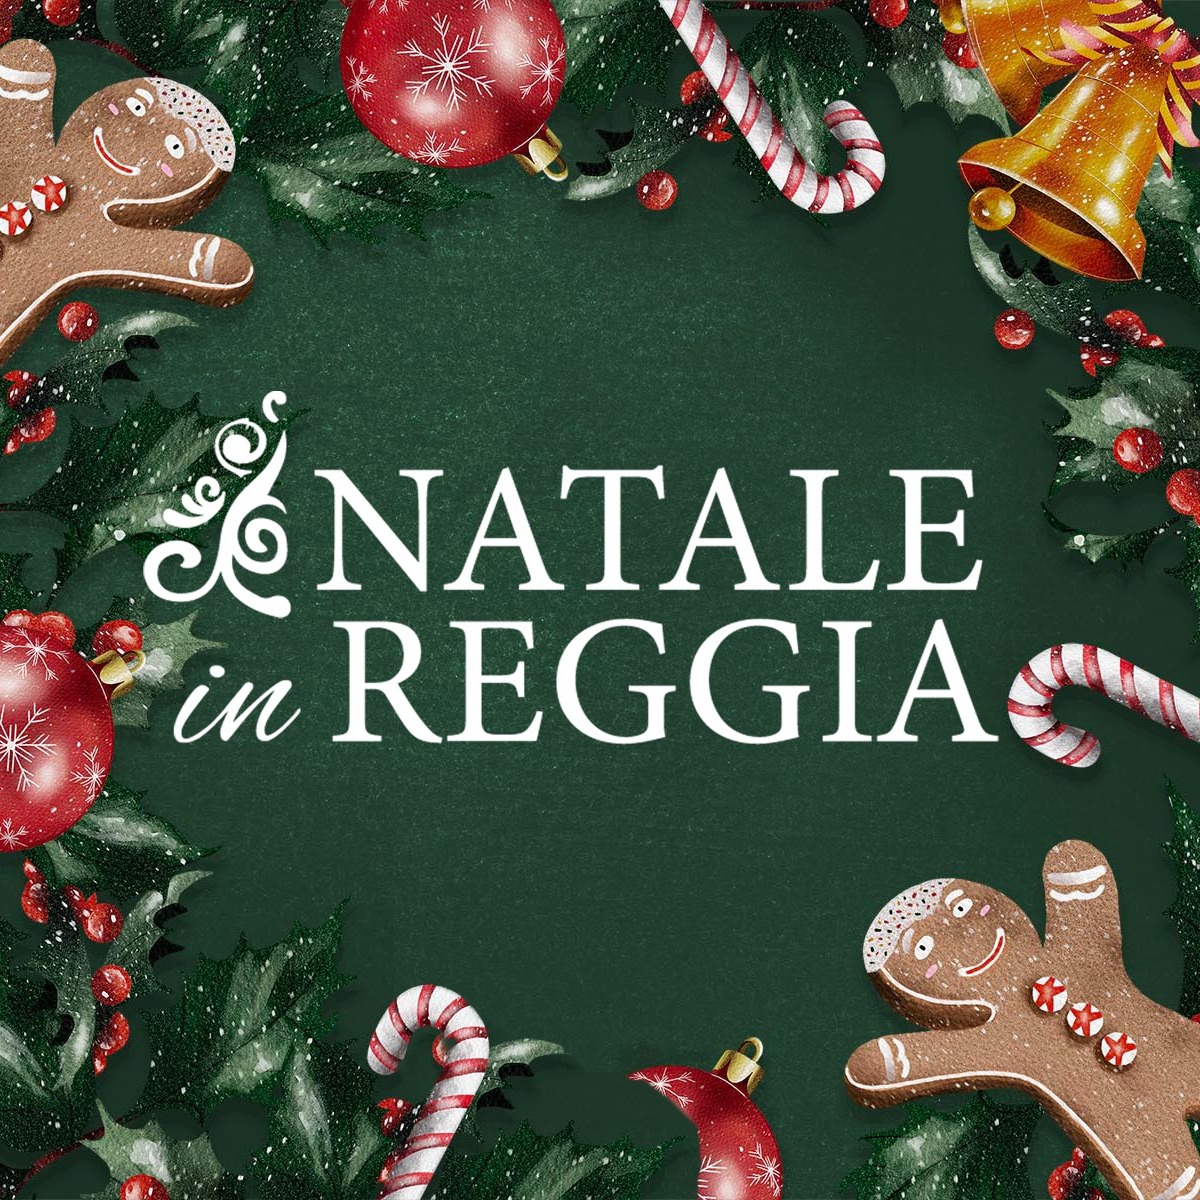 Natale in Reggia torna con una nuova edizione: il programma completo